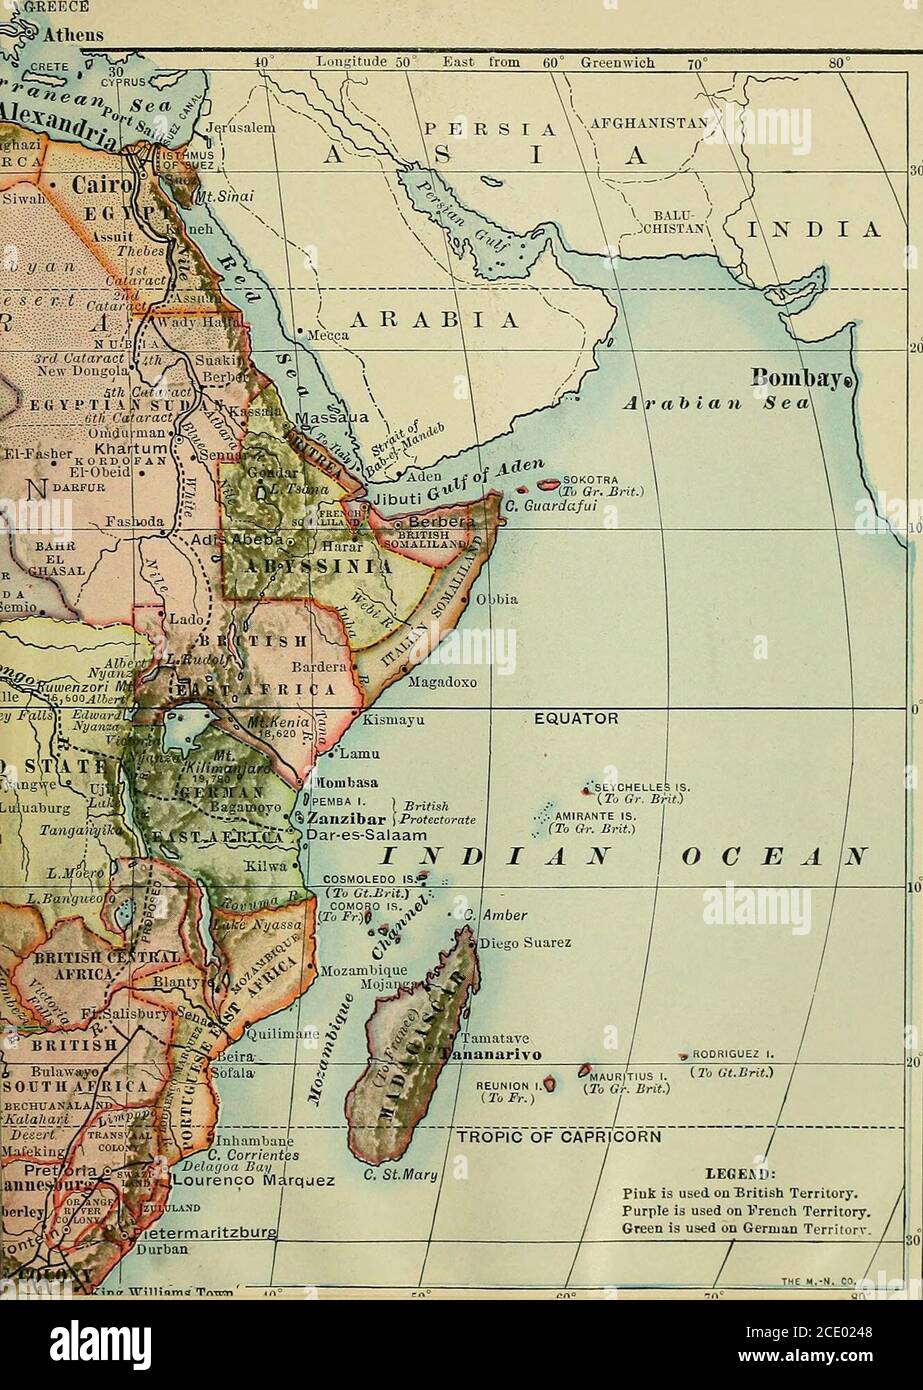 . Eine vollständige Geographie . Fhj, 511.Kartenfragen.-(1) Vergleiche die Größe Afrikas mit der der anderen Ausflüßer.(2) zeichne die östliche Hemisphäre, um die Position Afrikas zu zeigen. (3) Skizze die Outlinevon Afrika, und lokalisieren Sie die wichtigsten Flüsse und Seen. (4) welche Besonderheit bemerken Sie an der Lage der Berge? (5) welche Zonen durchqueren Afrika? ((J) welche Art von Klima (Temperatur und Niederschlag) würden Sie erwarten, zu finden (A) im extremen Norden;. (&) krank den äußersten Süden; (c) am Äquator; (c?) In der Nähe der Tropen? (7) Finden Sie das Wüstenland nördlich und südlich des Äquators. Erläutern Sie die Stockfoto